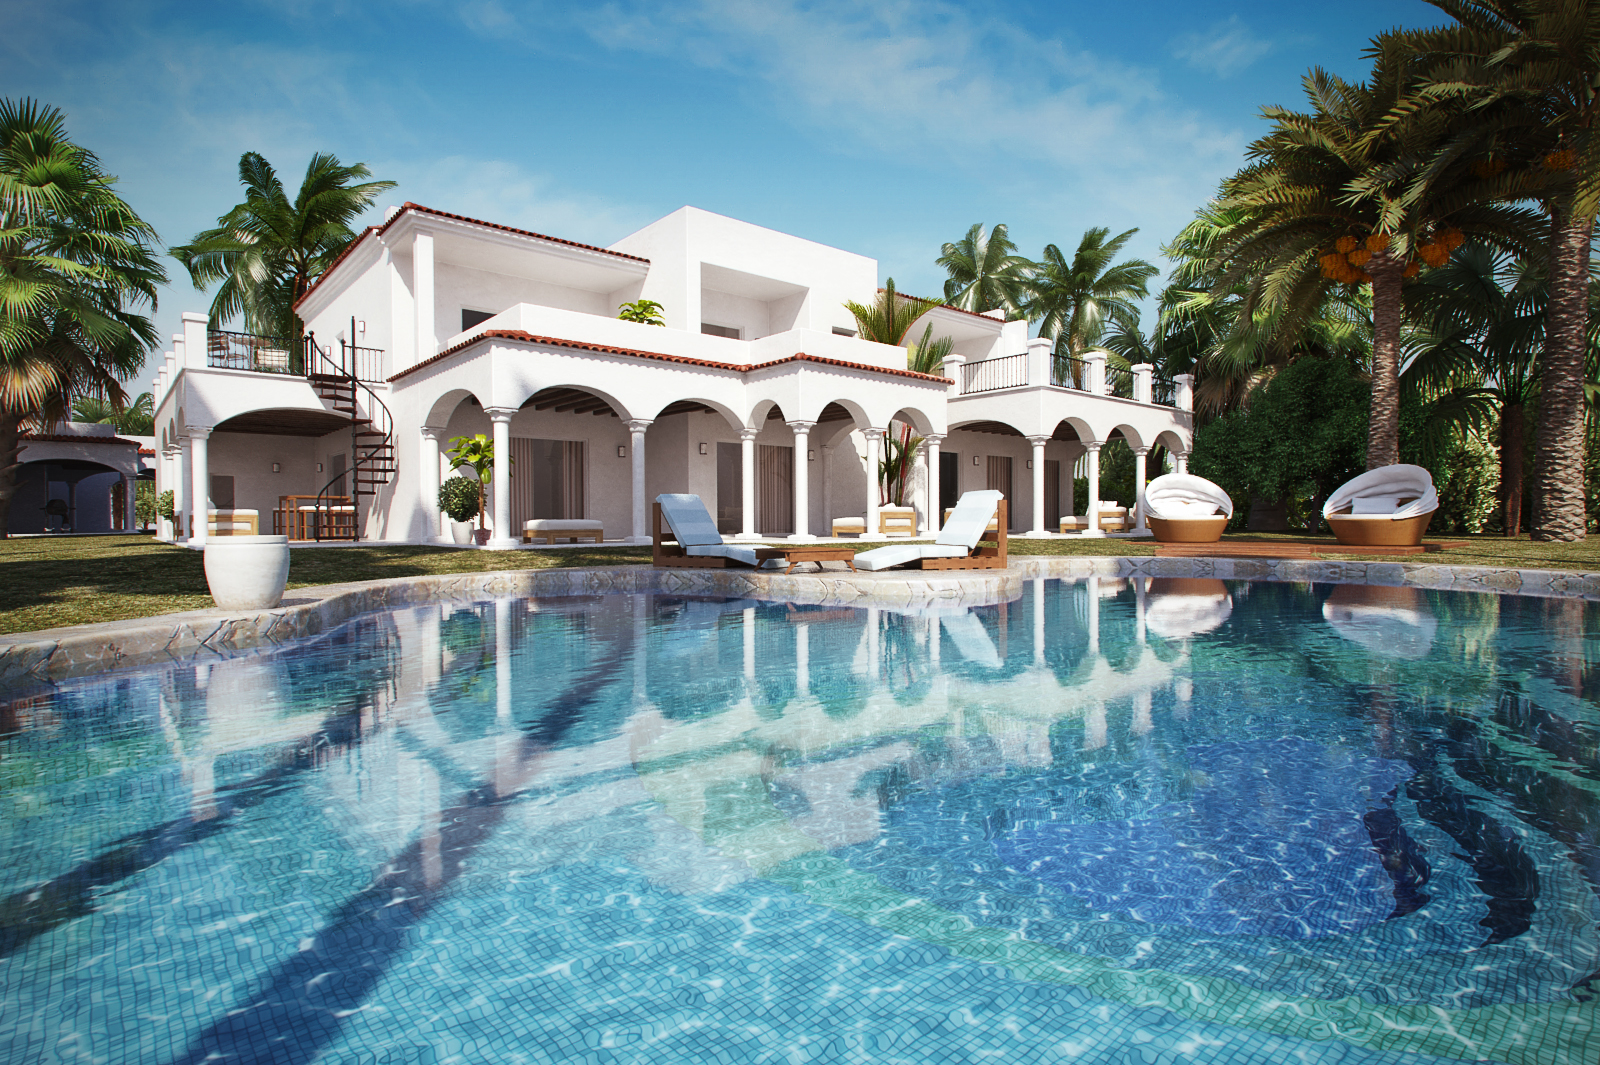 别墅住宅3D模型第二季 带大泳池的欧洲别墅 场景2